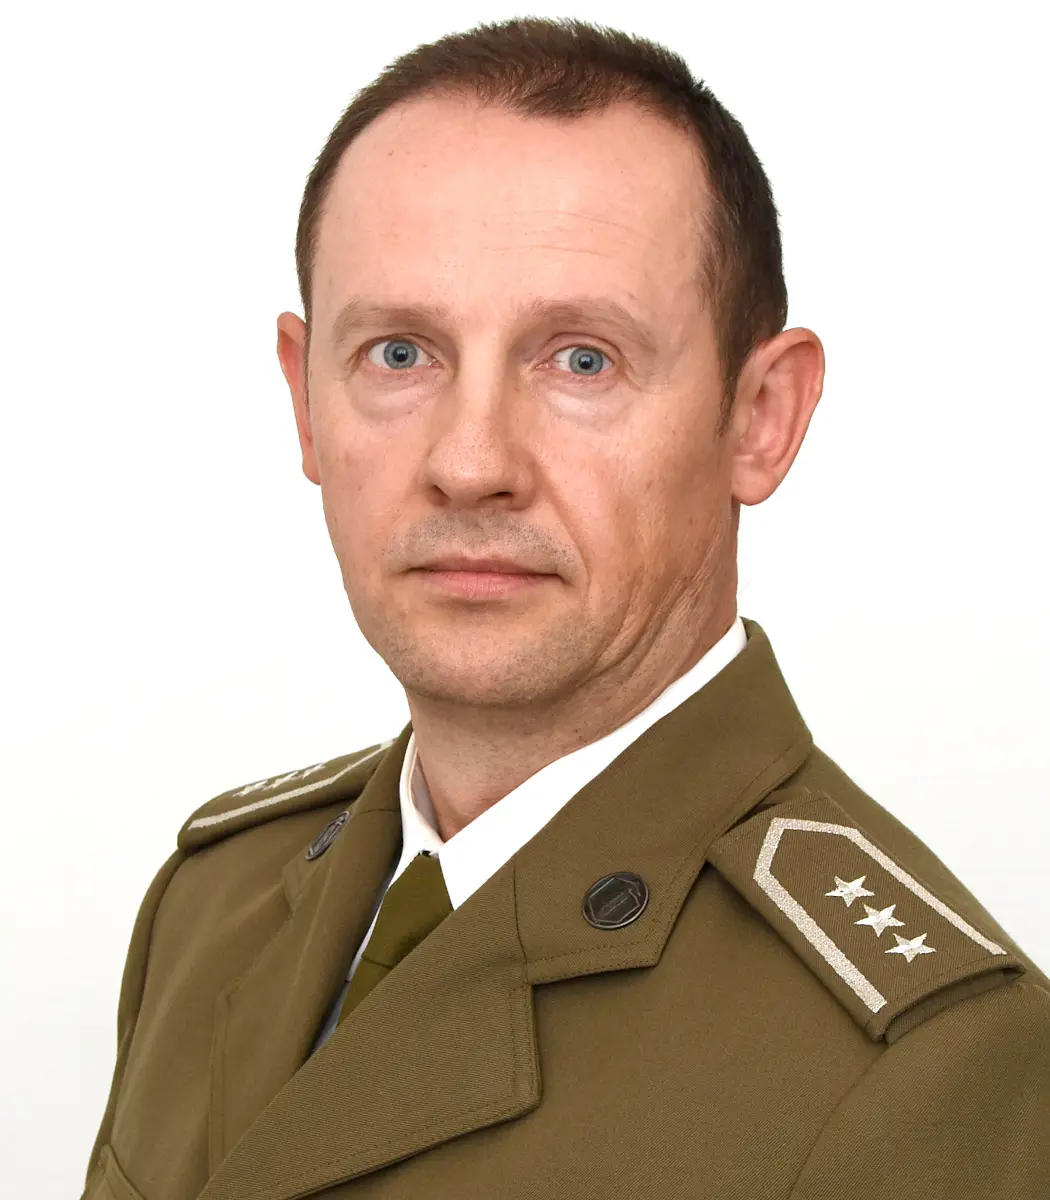 W lutym 6 funkcjonariuszy KaOSG pożegnało się z mundurem, w tym Ppłk SG Marcin Wojtyga